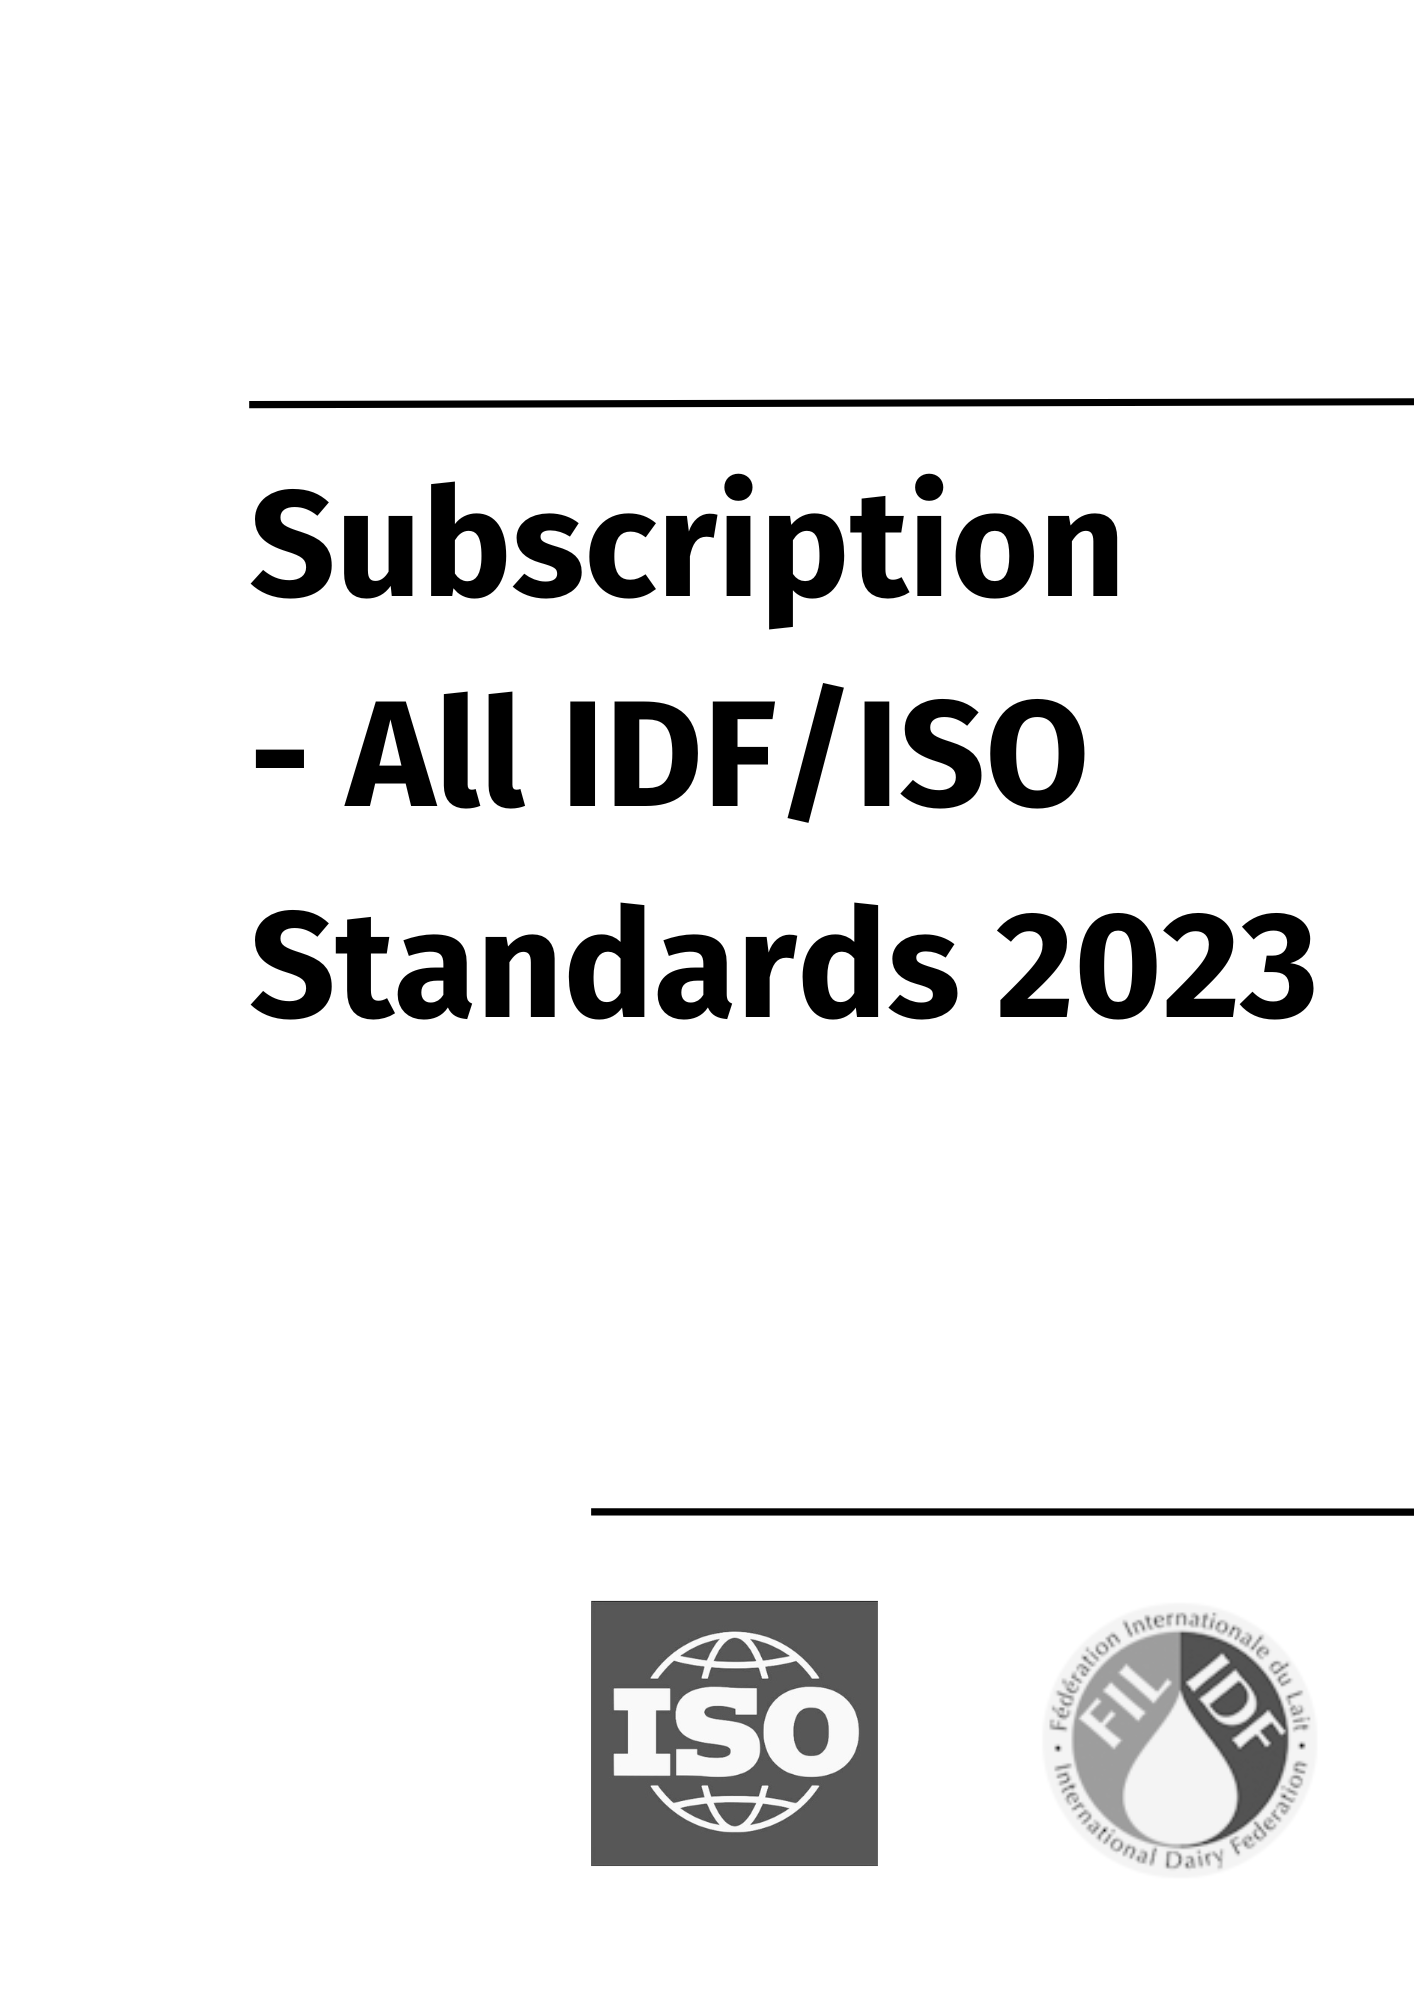 Subscription - All IDF Standards 2023 - FIL-IDF